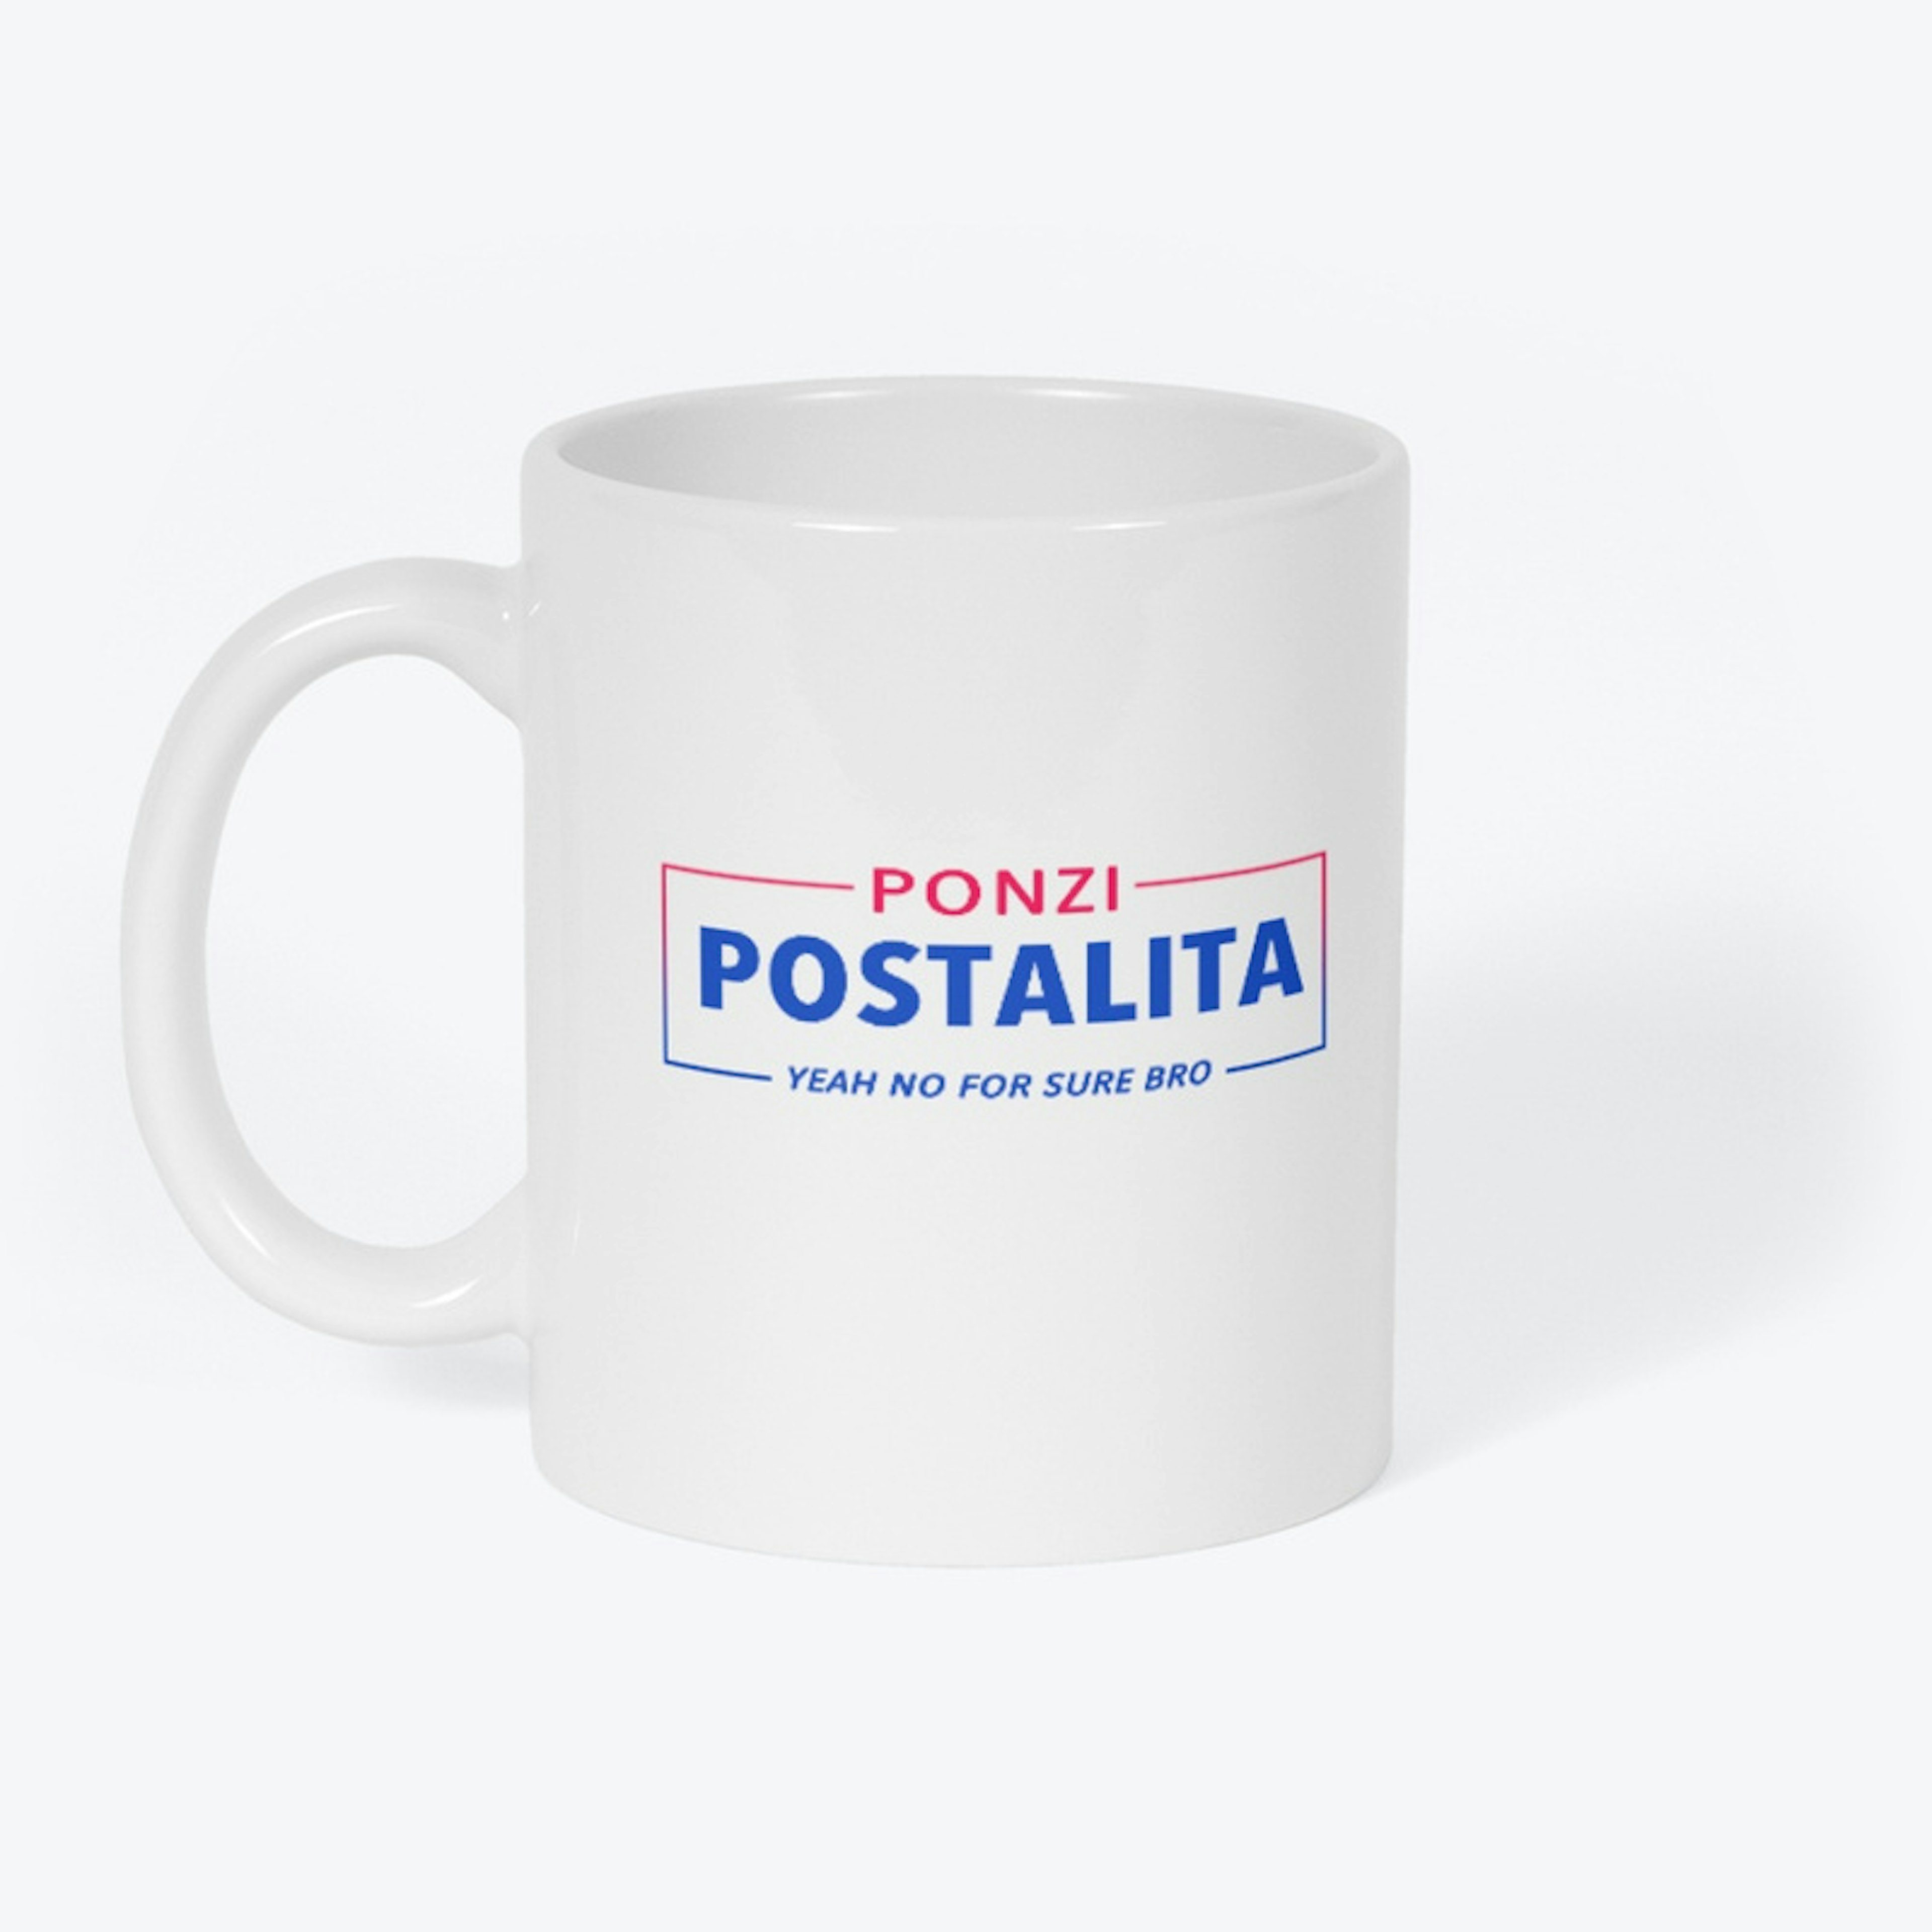 Ponzi Postalita Campaign Mug